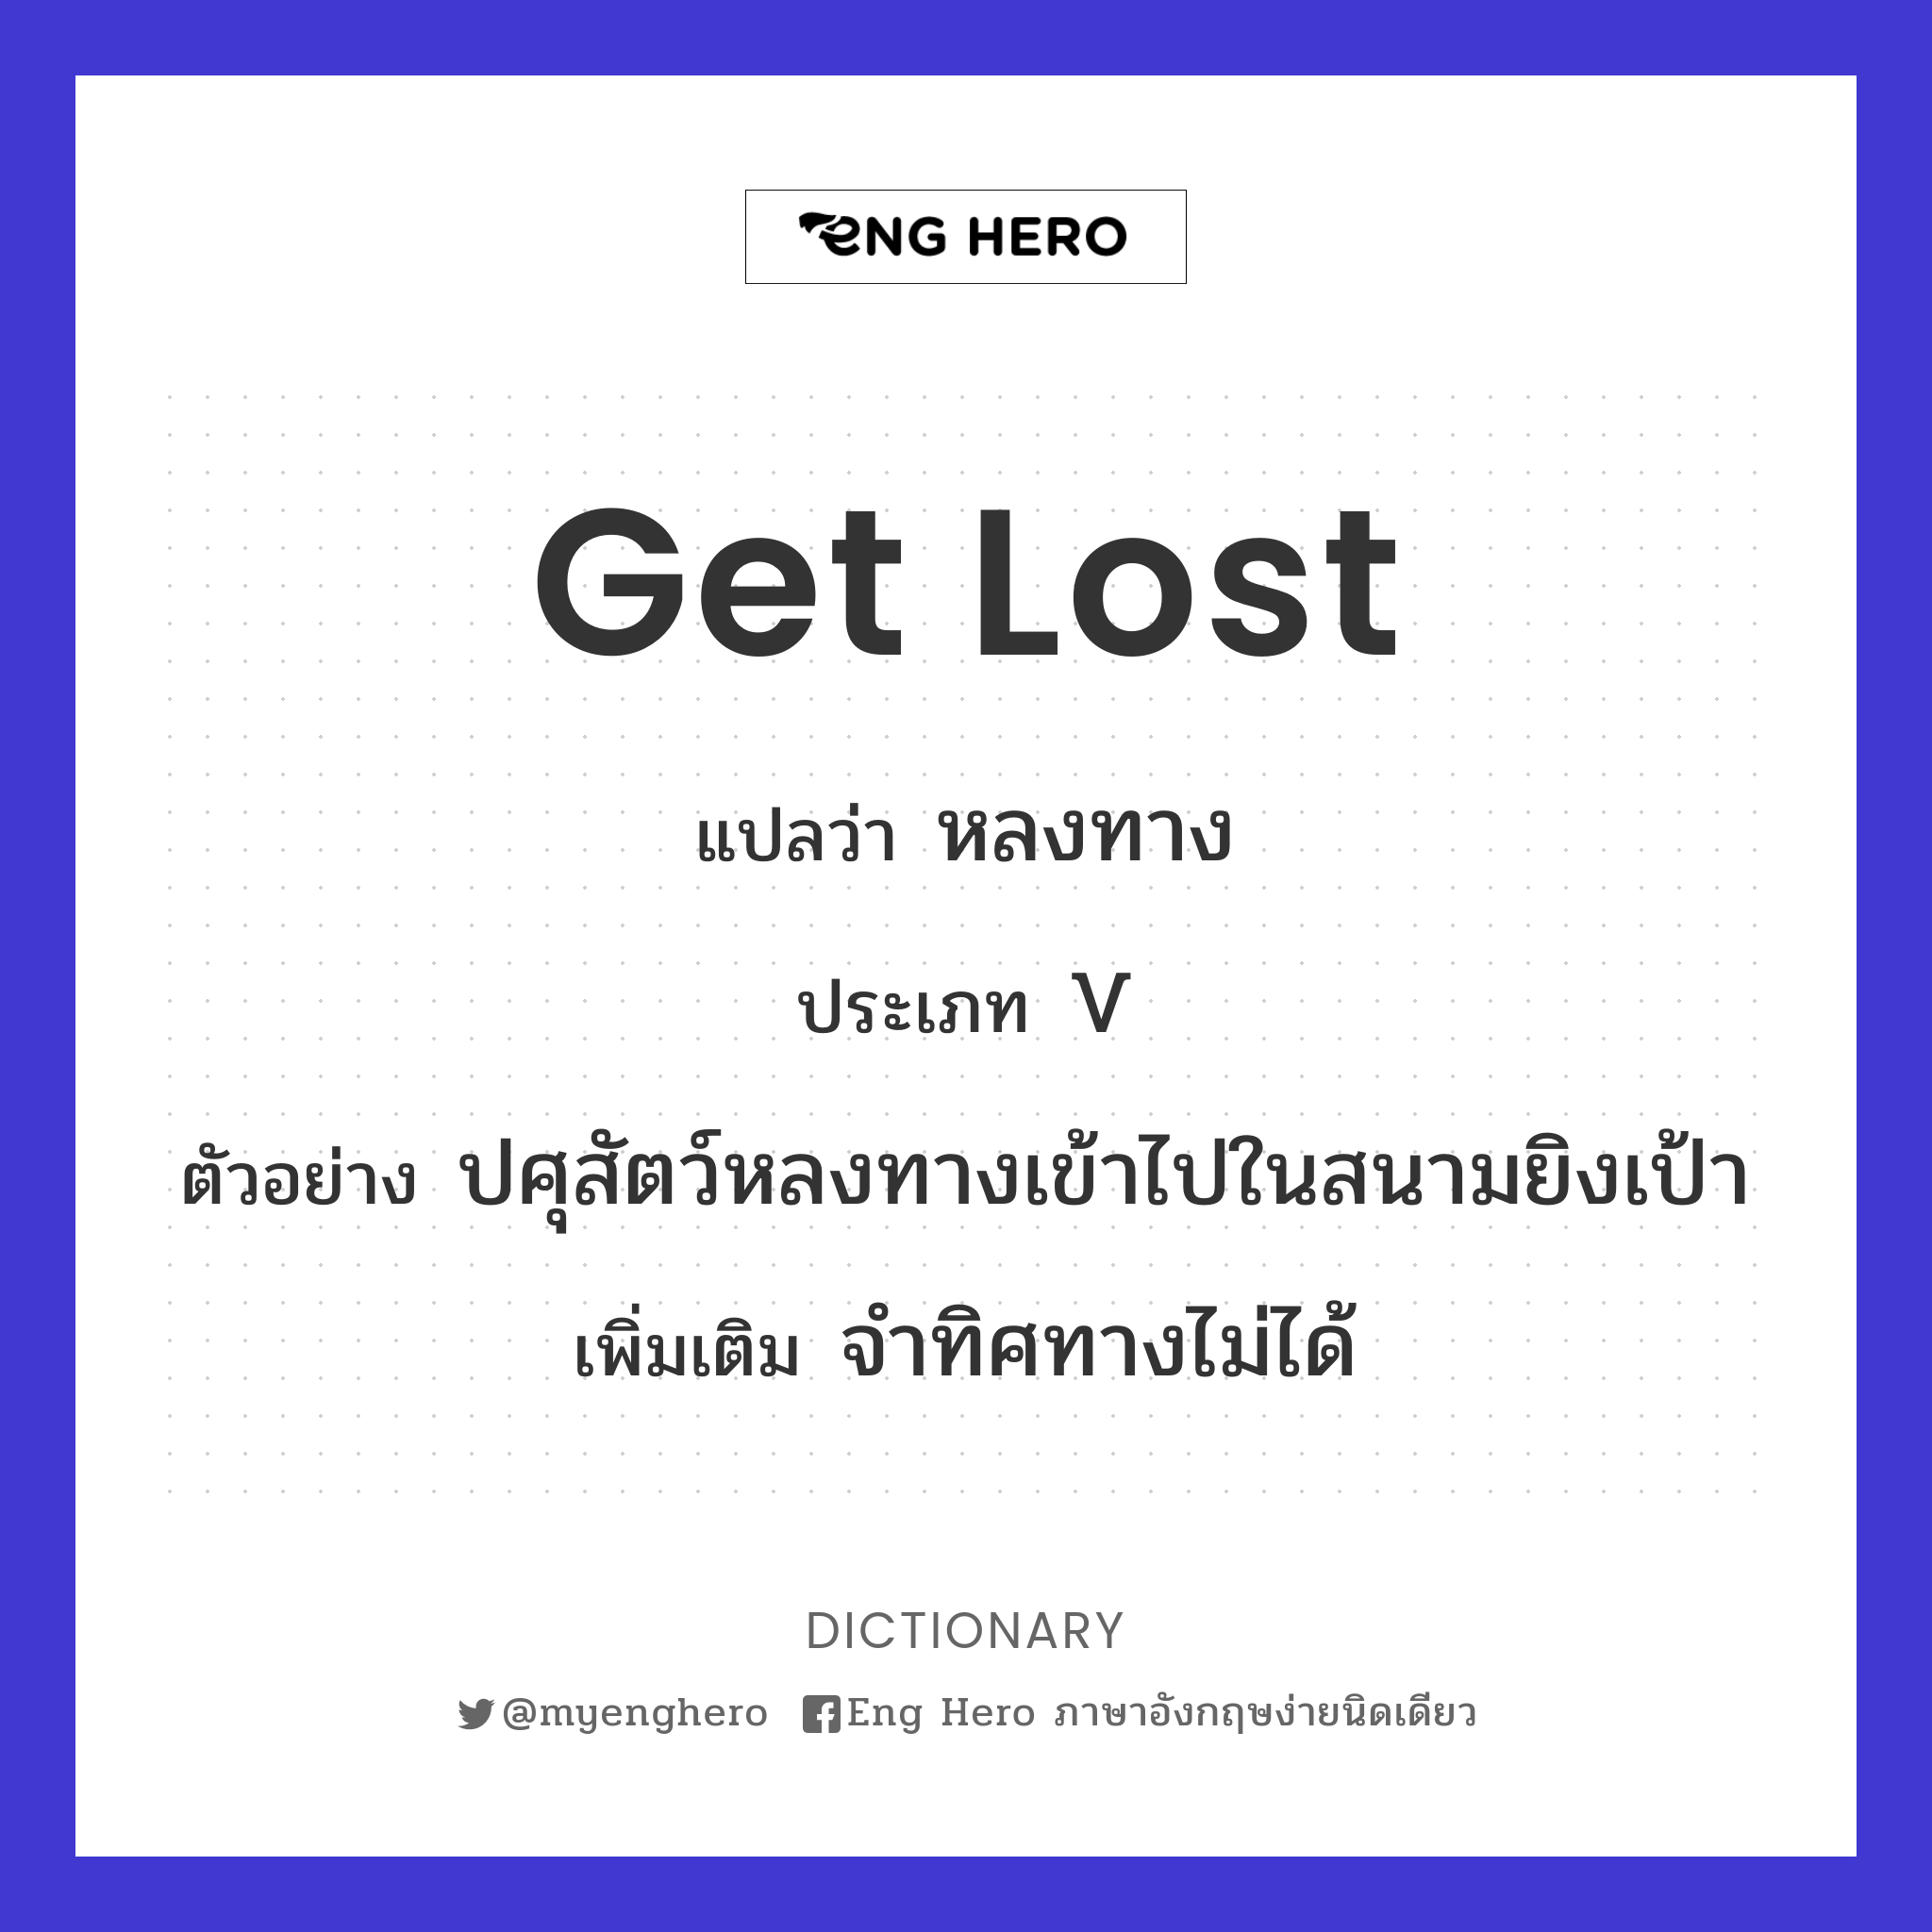 get lost